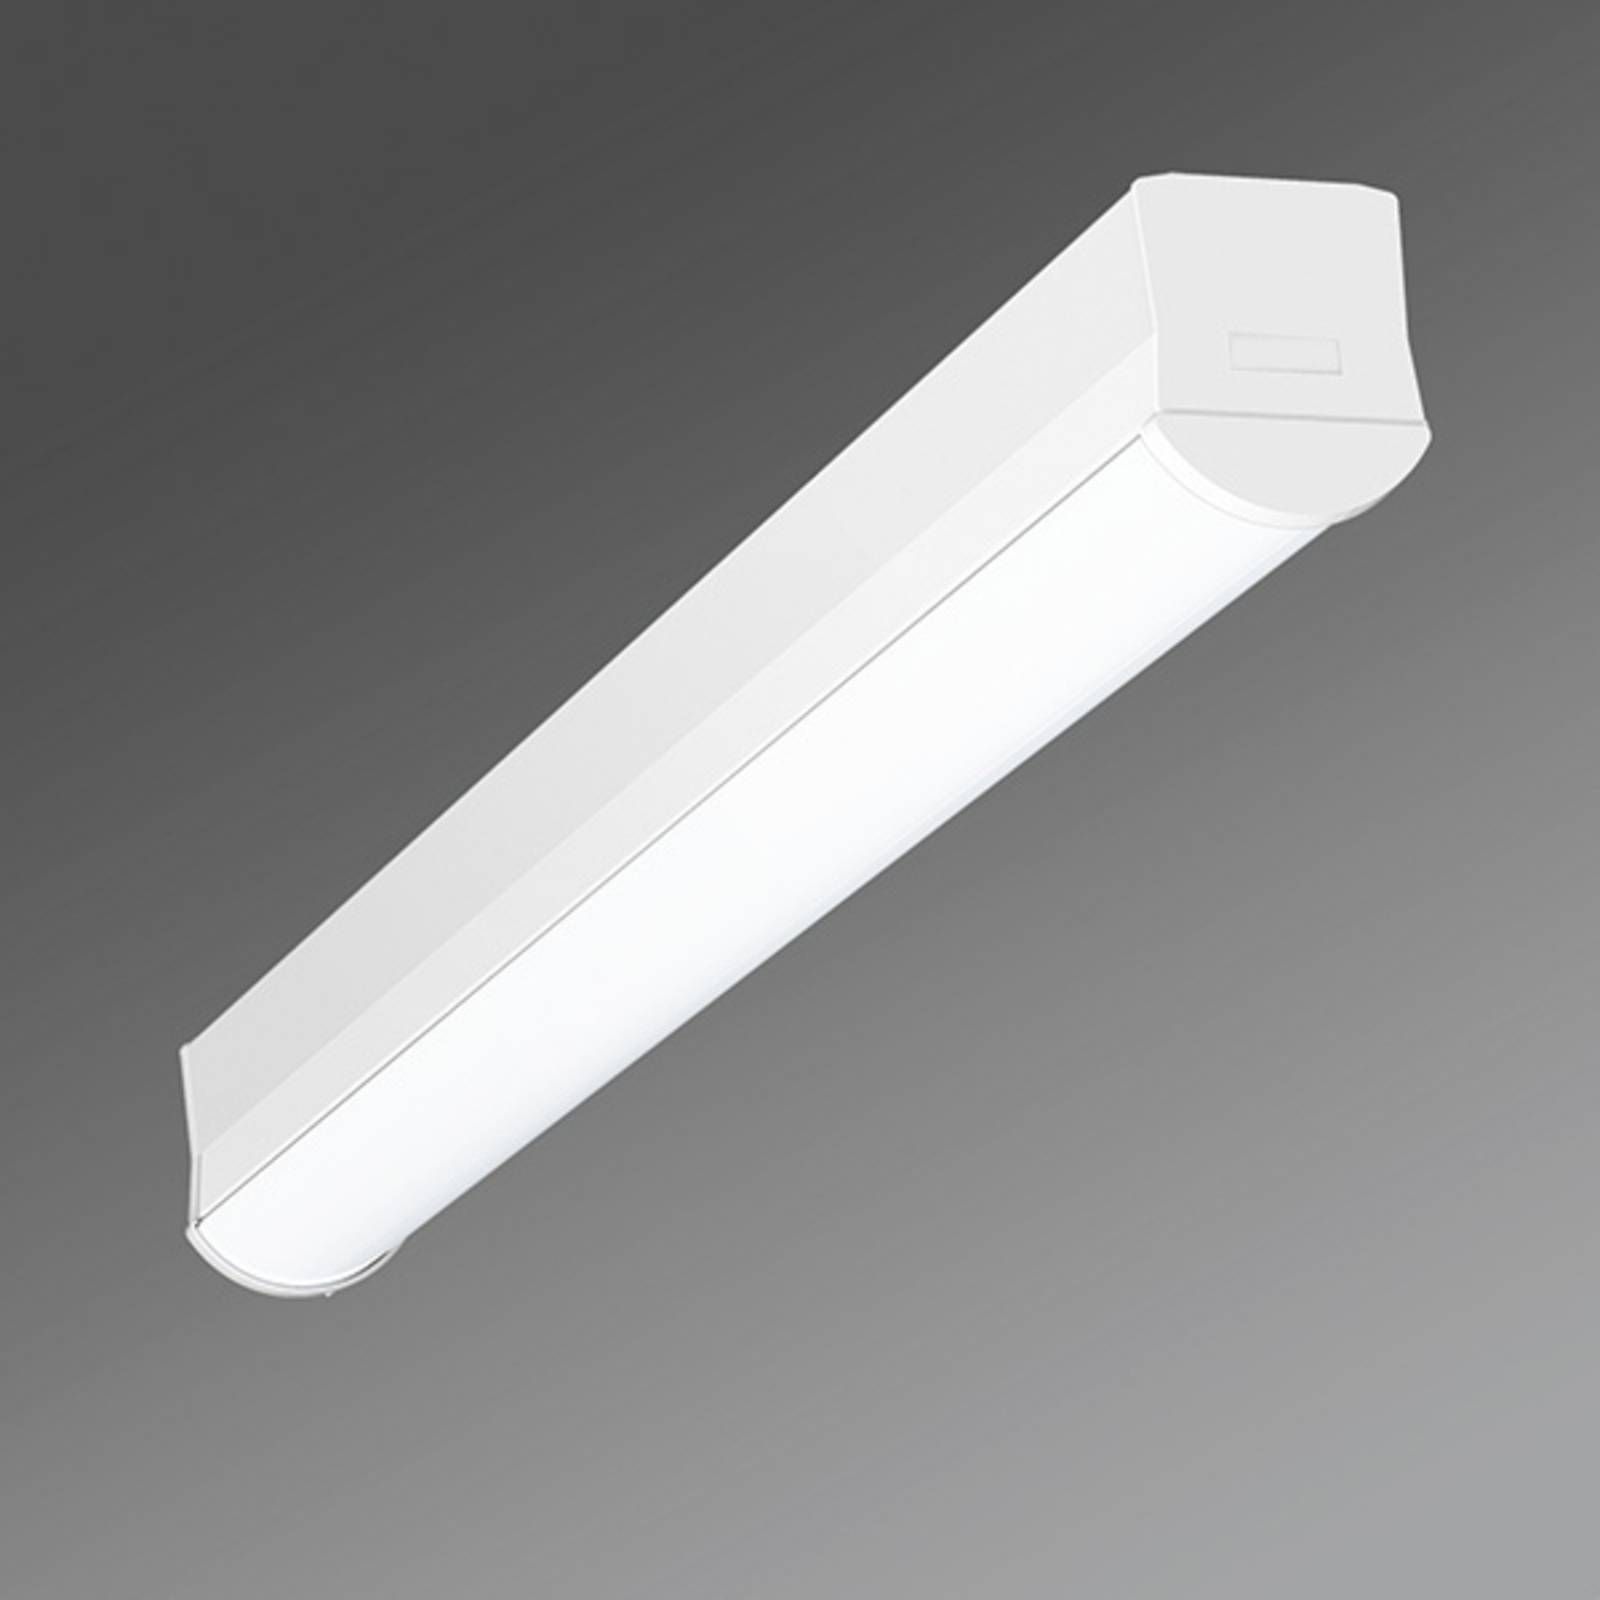 Regiolux Úzke stropné LED svietidlo Ilia-ILG/0600 3 000 K, Chodba, oceľ, plast, 20W, P: 58 cm, L: 5.6 cm, K: 6.6cm